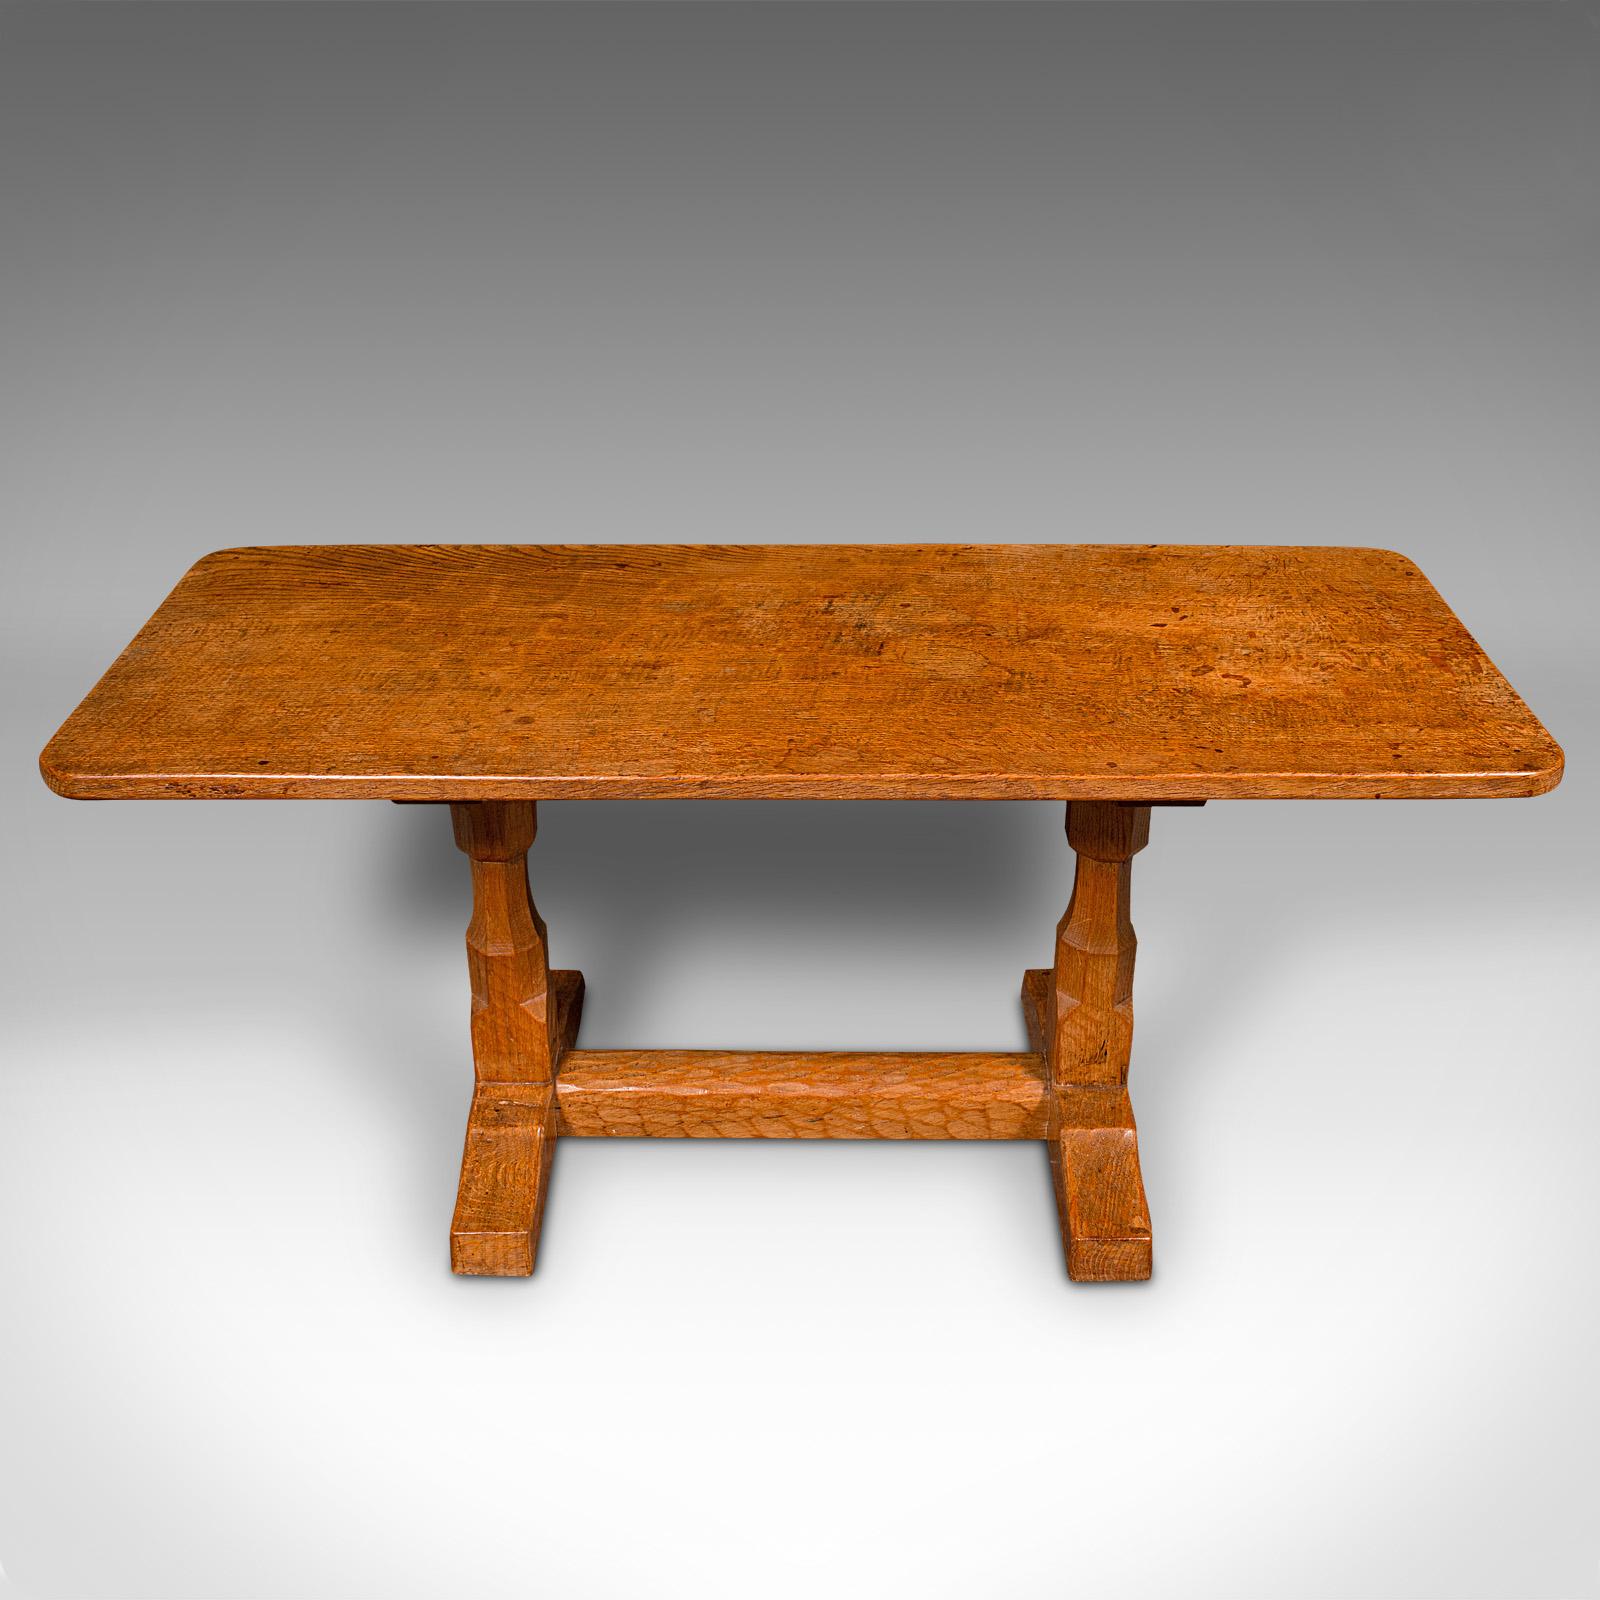 Il s'agit d'une table basse vintage. Table de salon décorative anglaise en chêne à la manière de Robert Thompson 'Mouseman', datant de la fin du 20e siècle, vers 1970.

Délicieuse table basse à l'esthétique singulière
Présente une patine d'usage